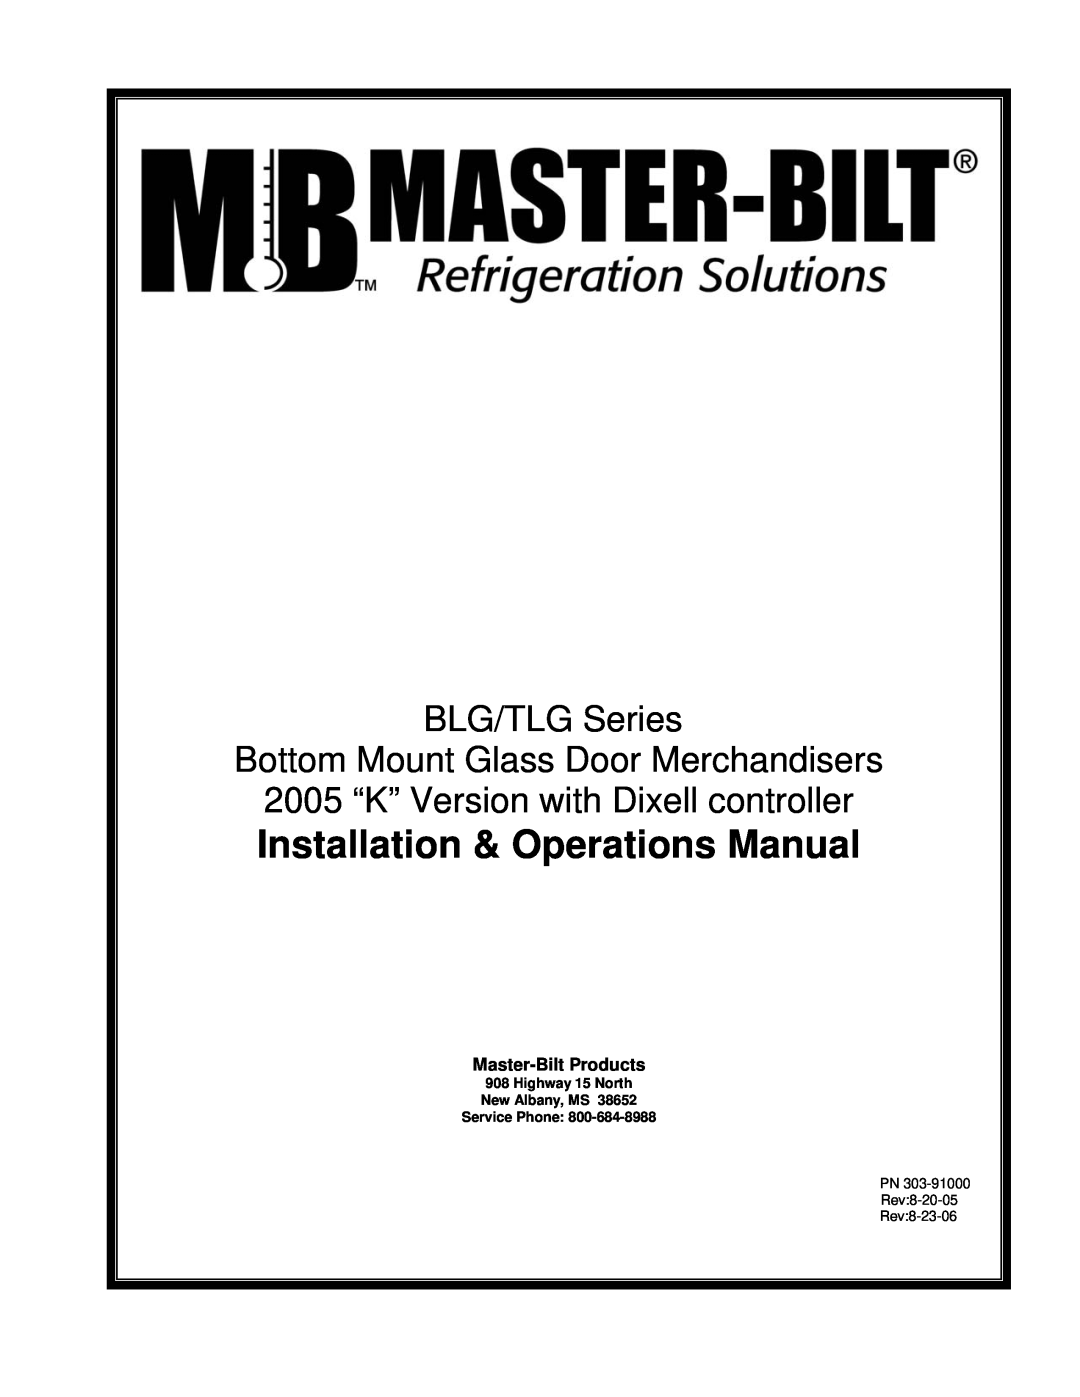 Master Bilt K manual Installation & Operations Manual, BLG/TLG Series Bottom Mount Glass Door Merchandisers 